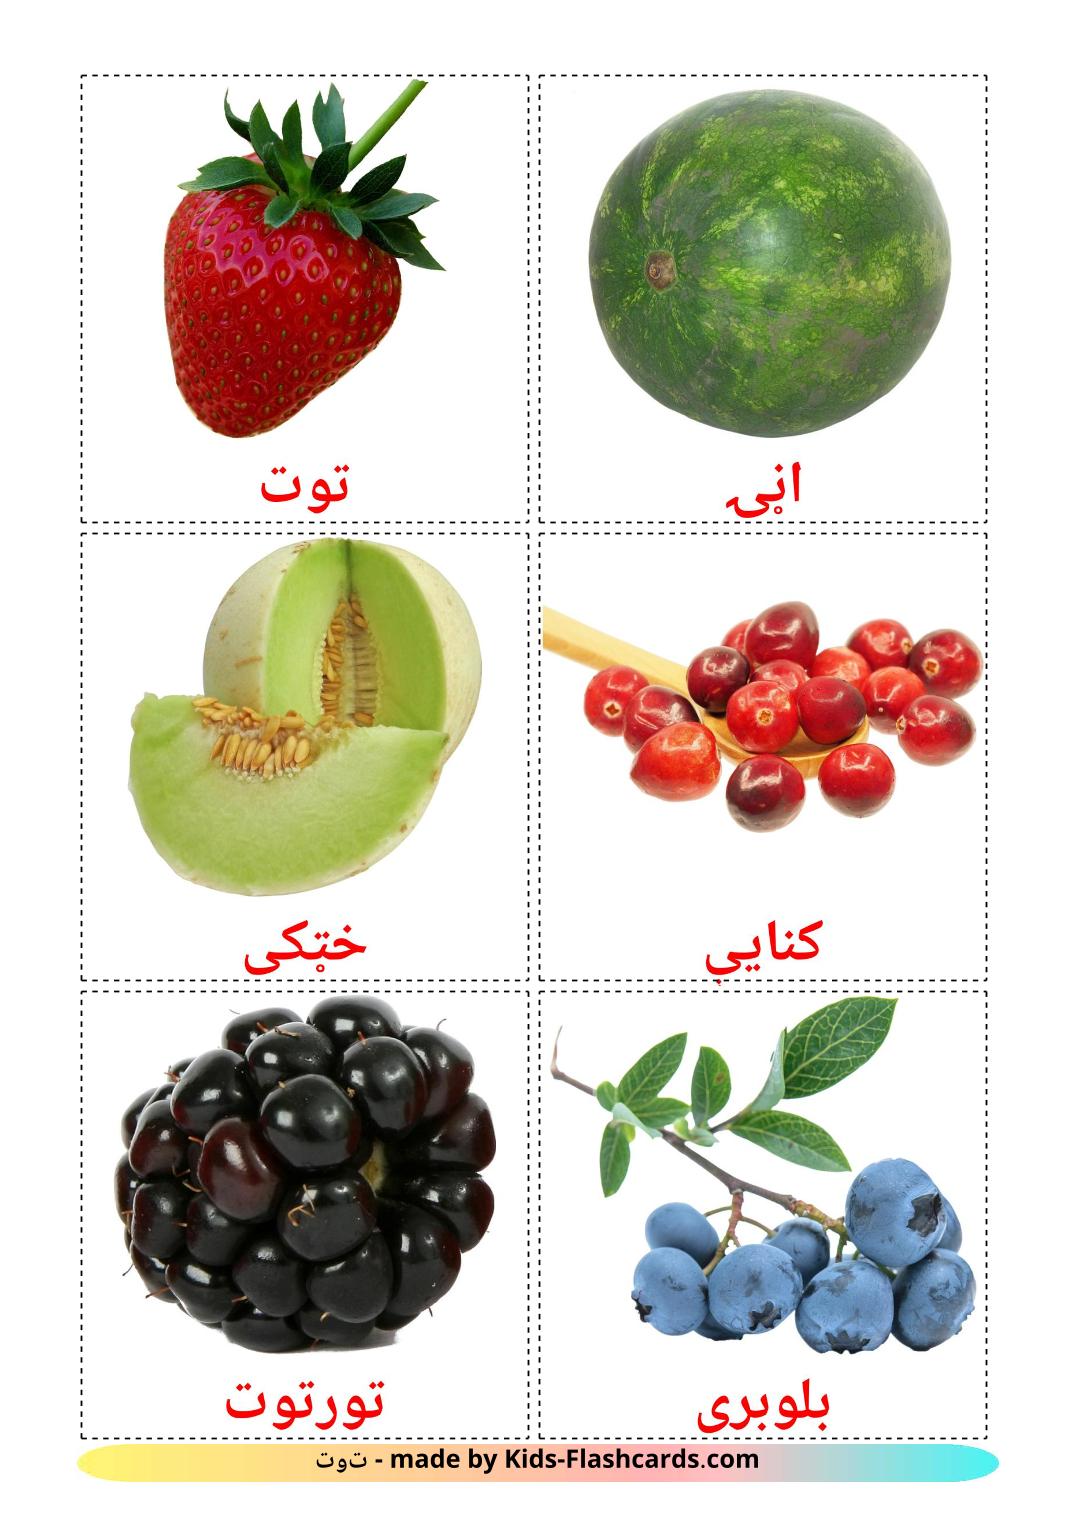 Bessen - 11 gratis printbare pashtoe kaarten